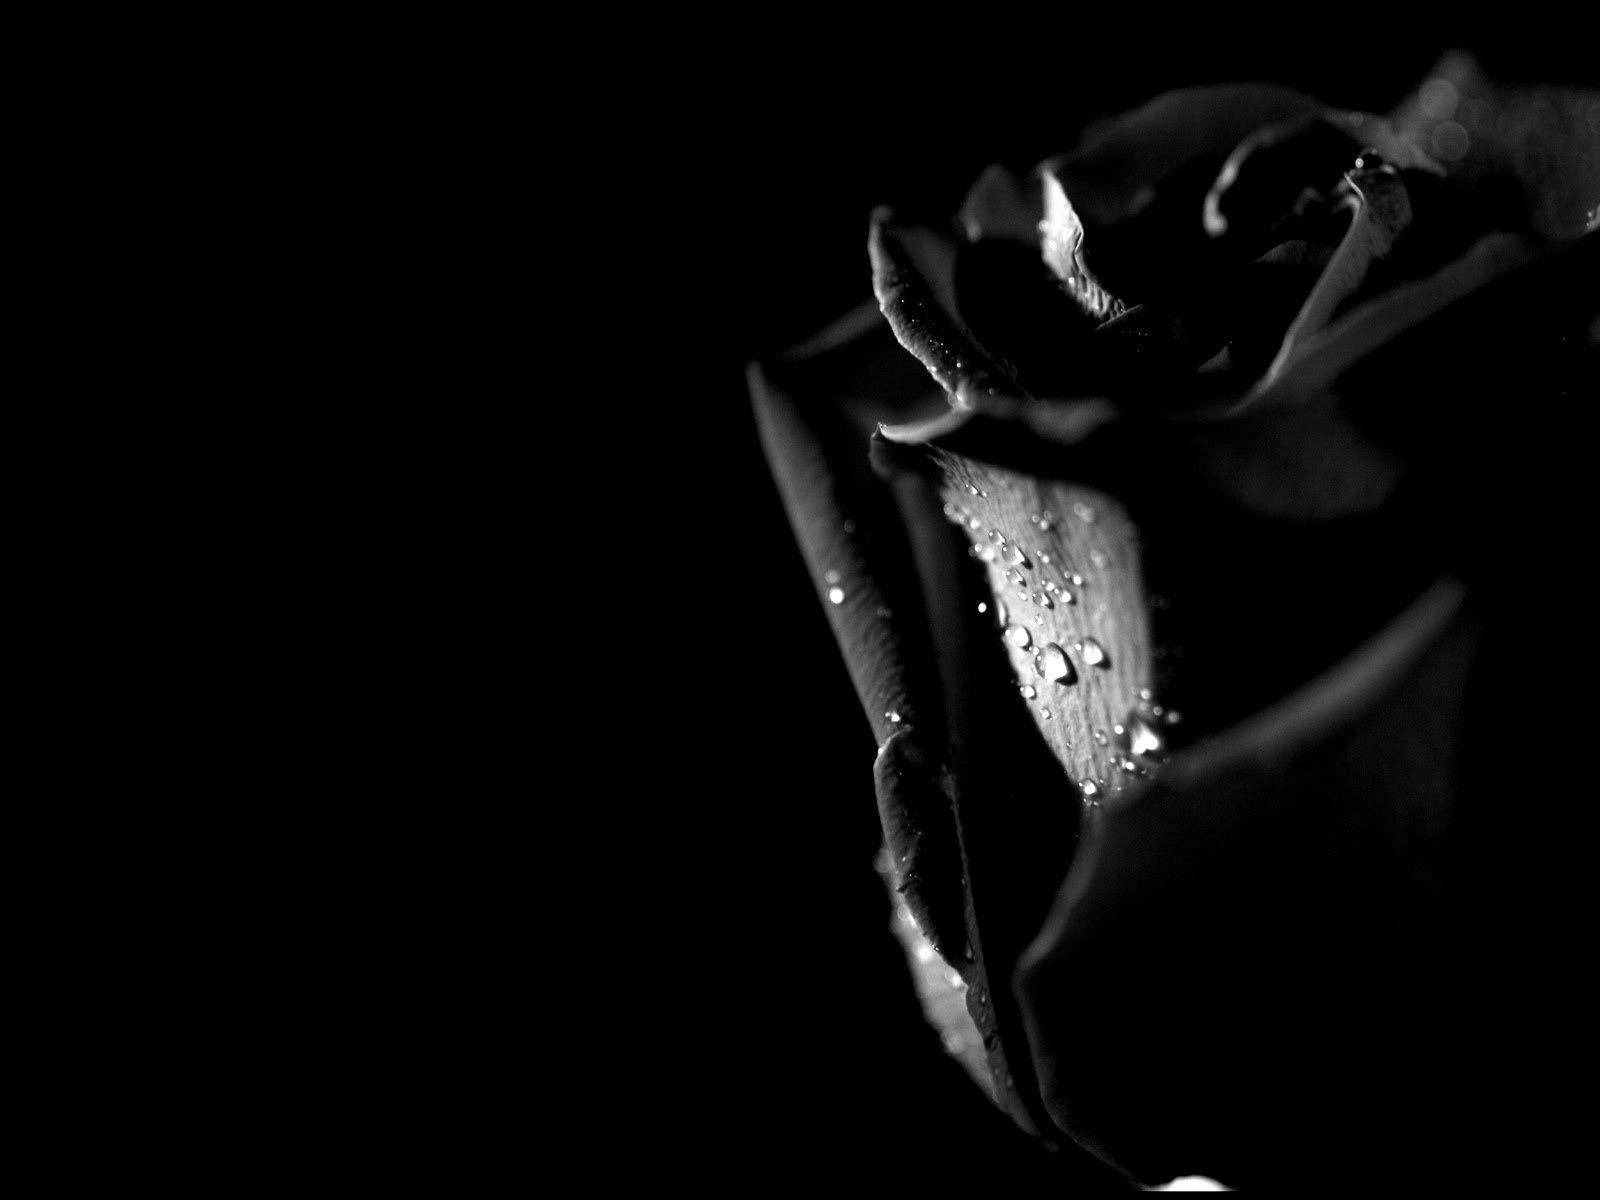 Black Rose In The Dark